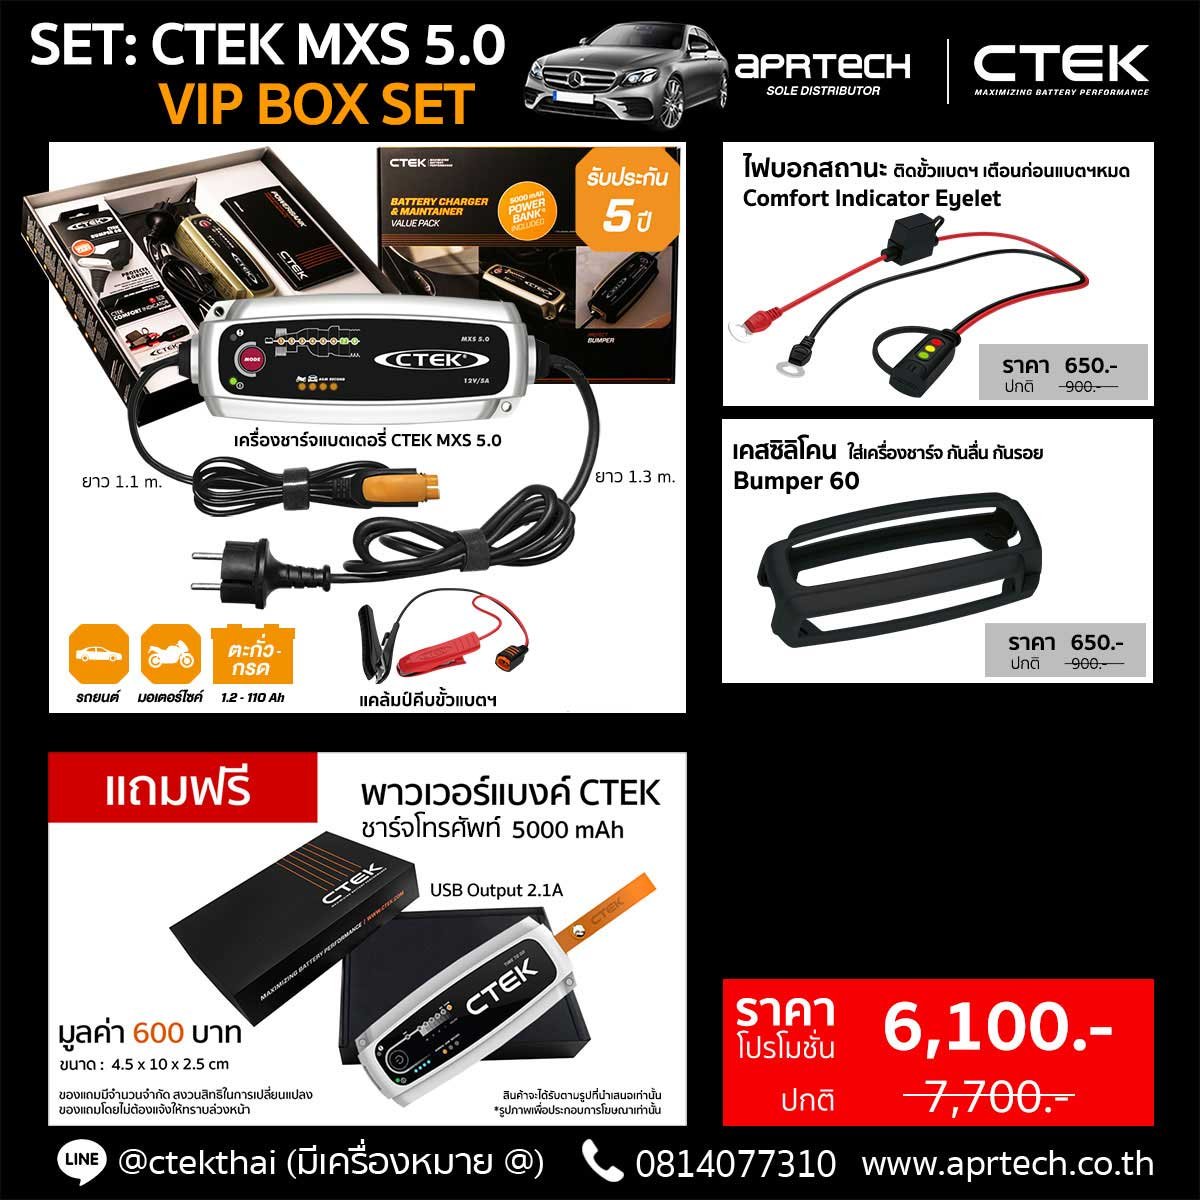 SET CTEK MXS 5.0 VIP BOX SET (CTEK MXS 5.0 + Indicator Eyelet + Bumper)